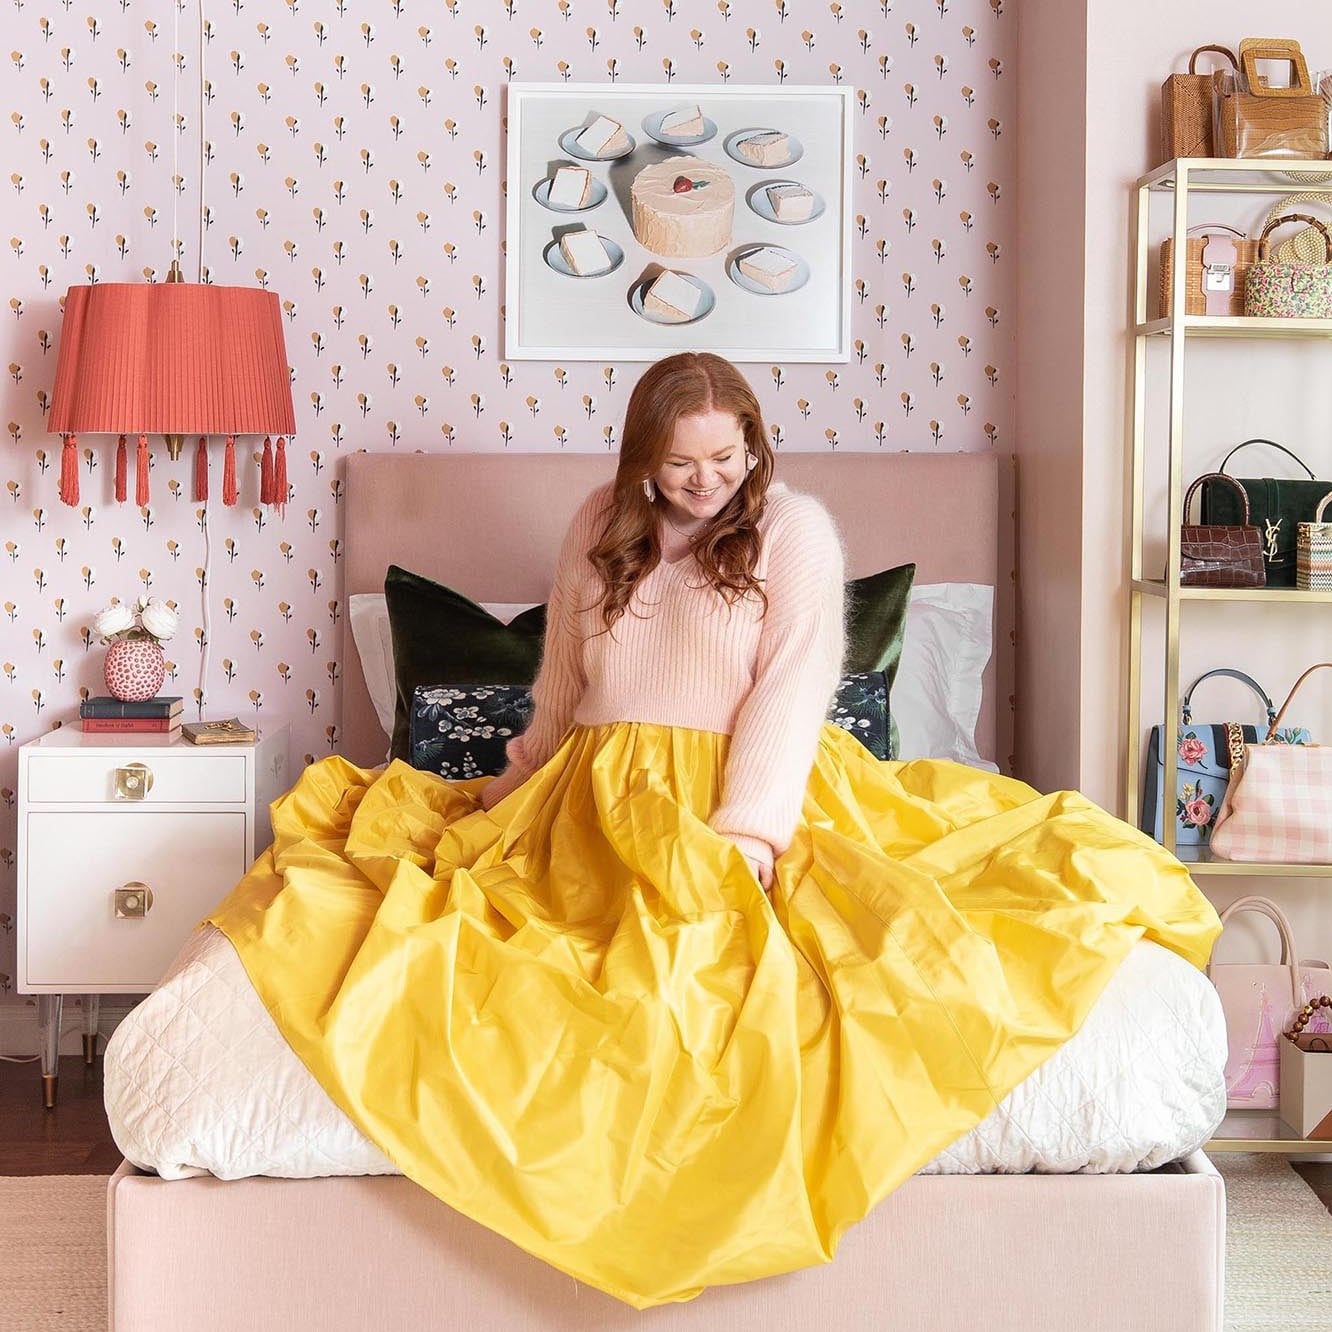 Девушка в бледно-розовой кофте и ярко-жёлтой юбке сидит в стильно оформленной квартире в розовых тонах